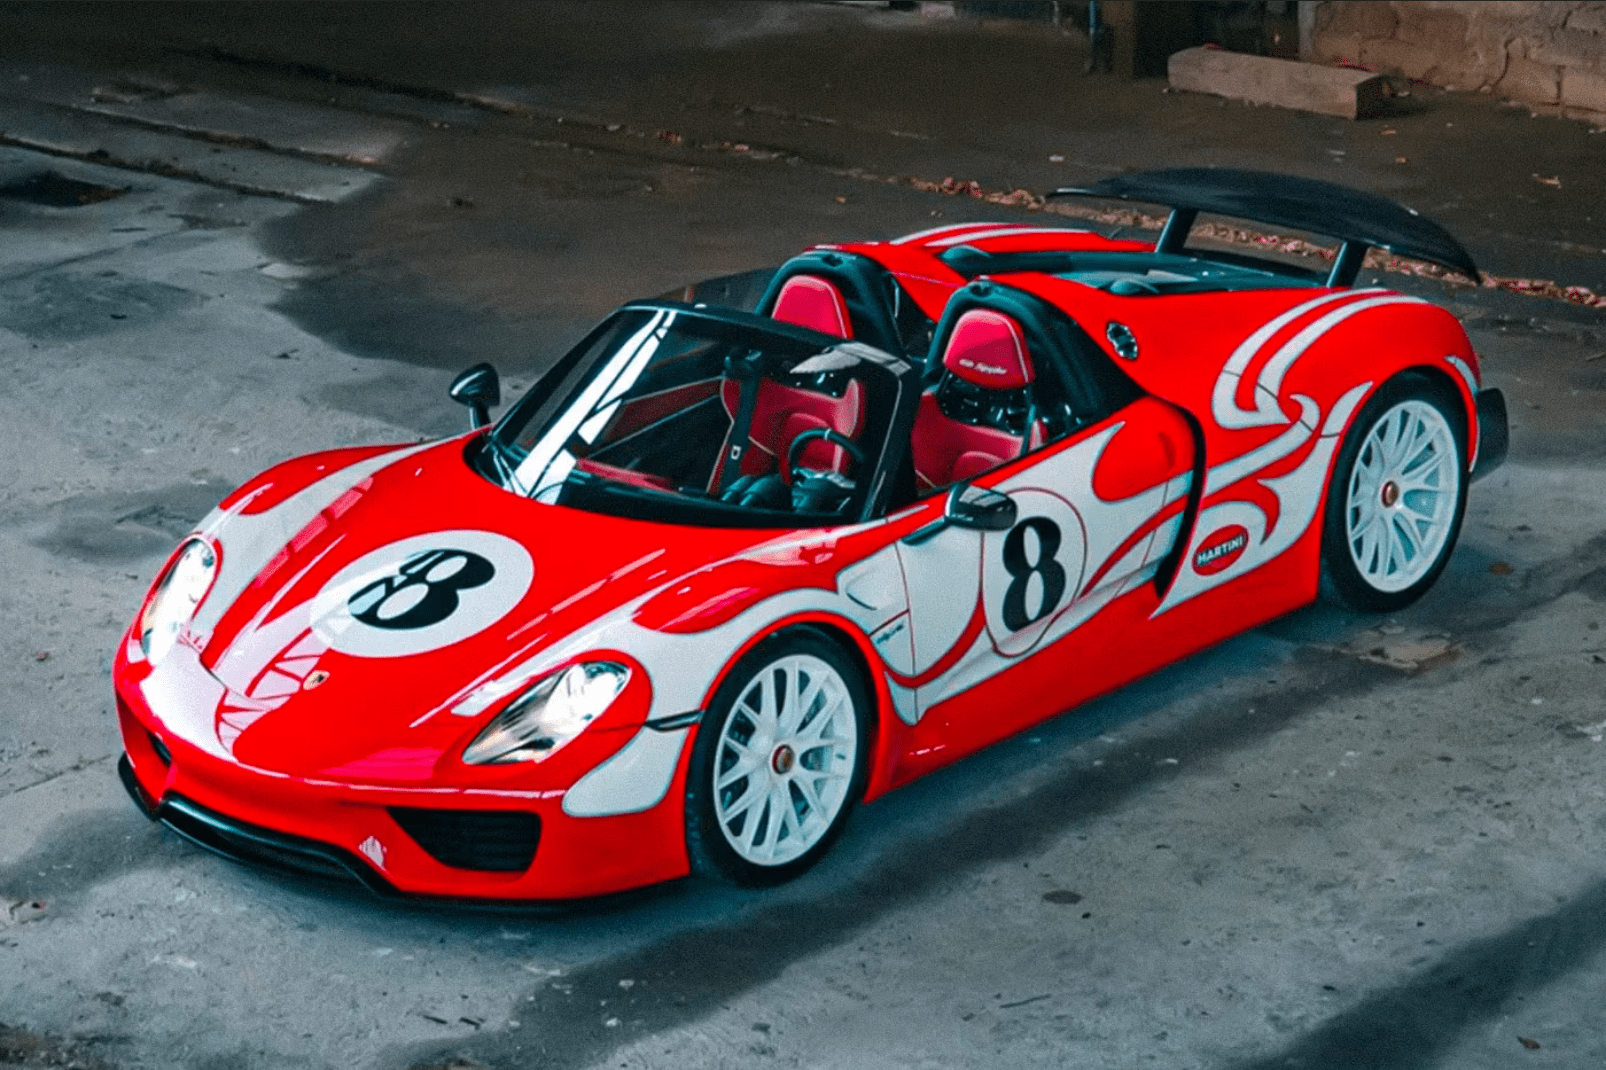 2015 Porsche 918 “Weissach” Spyder veiling RM Sotheby's